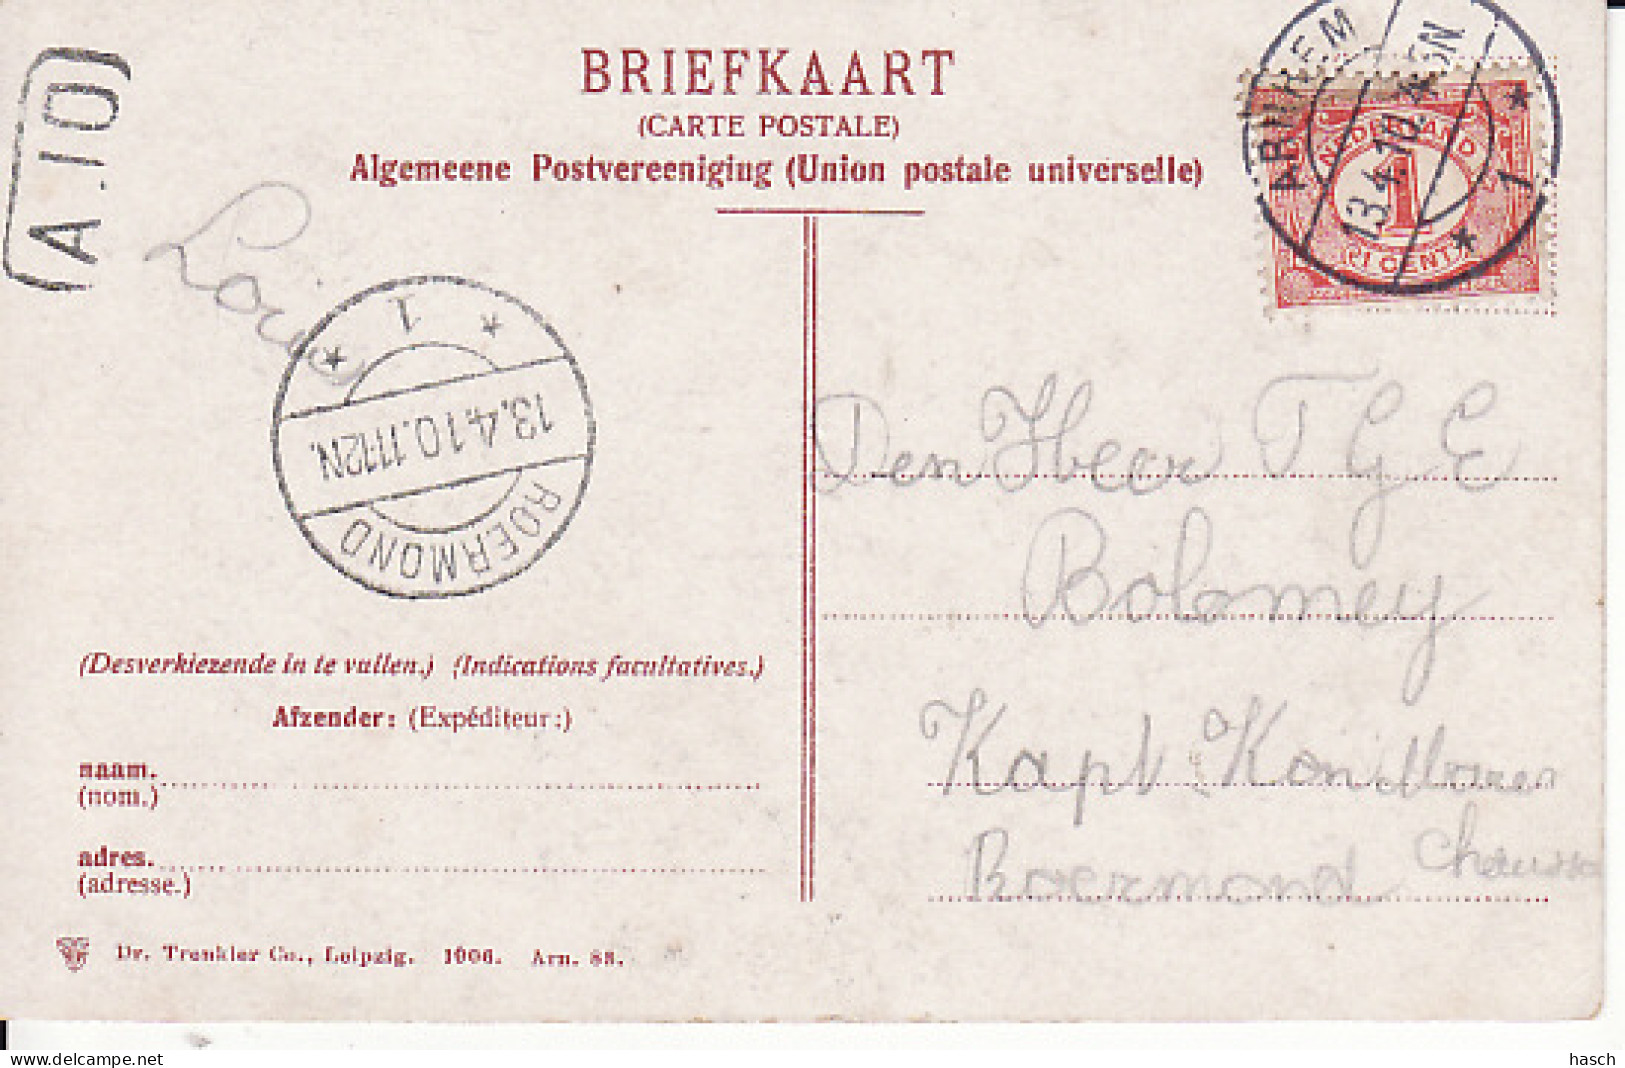 258966Arnhem, Lauwersgracht 1910 - Arnhem